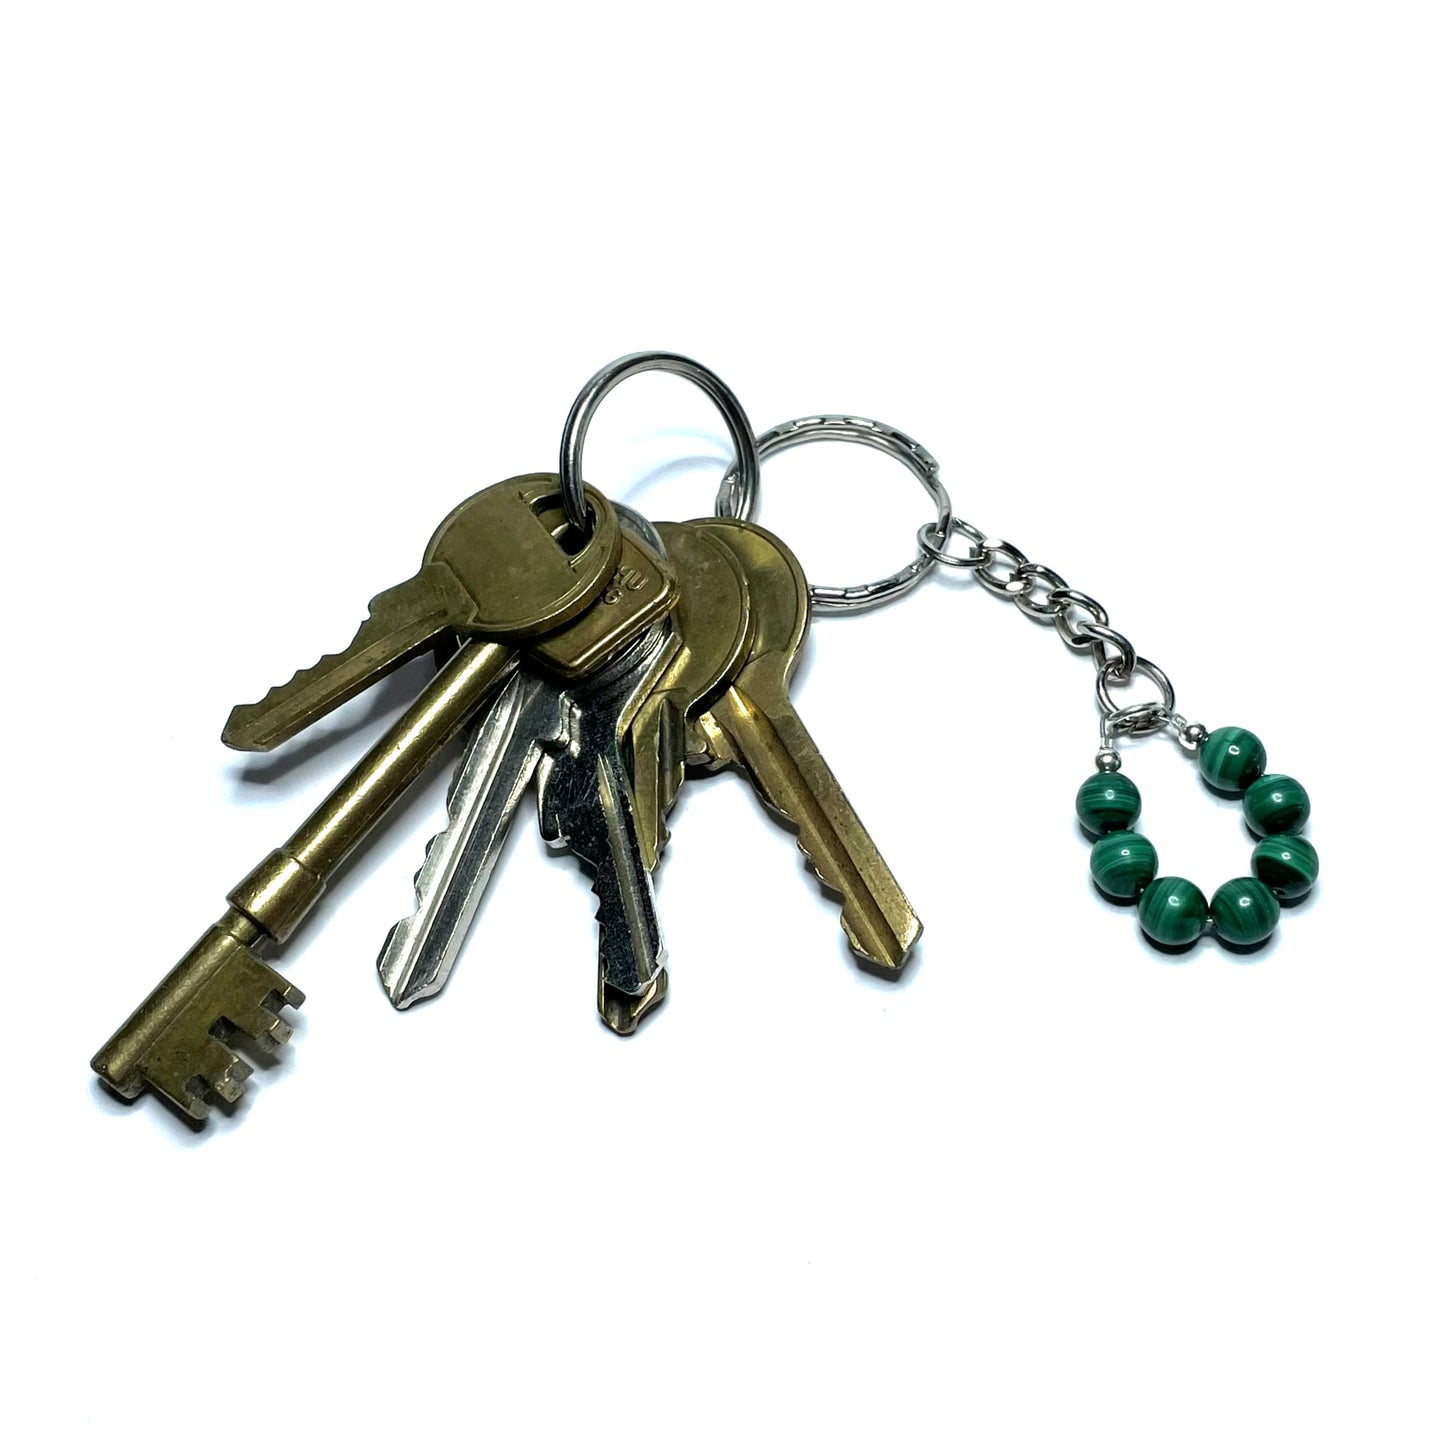 Green gemstone keychain with a set of keys